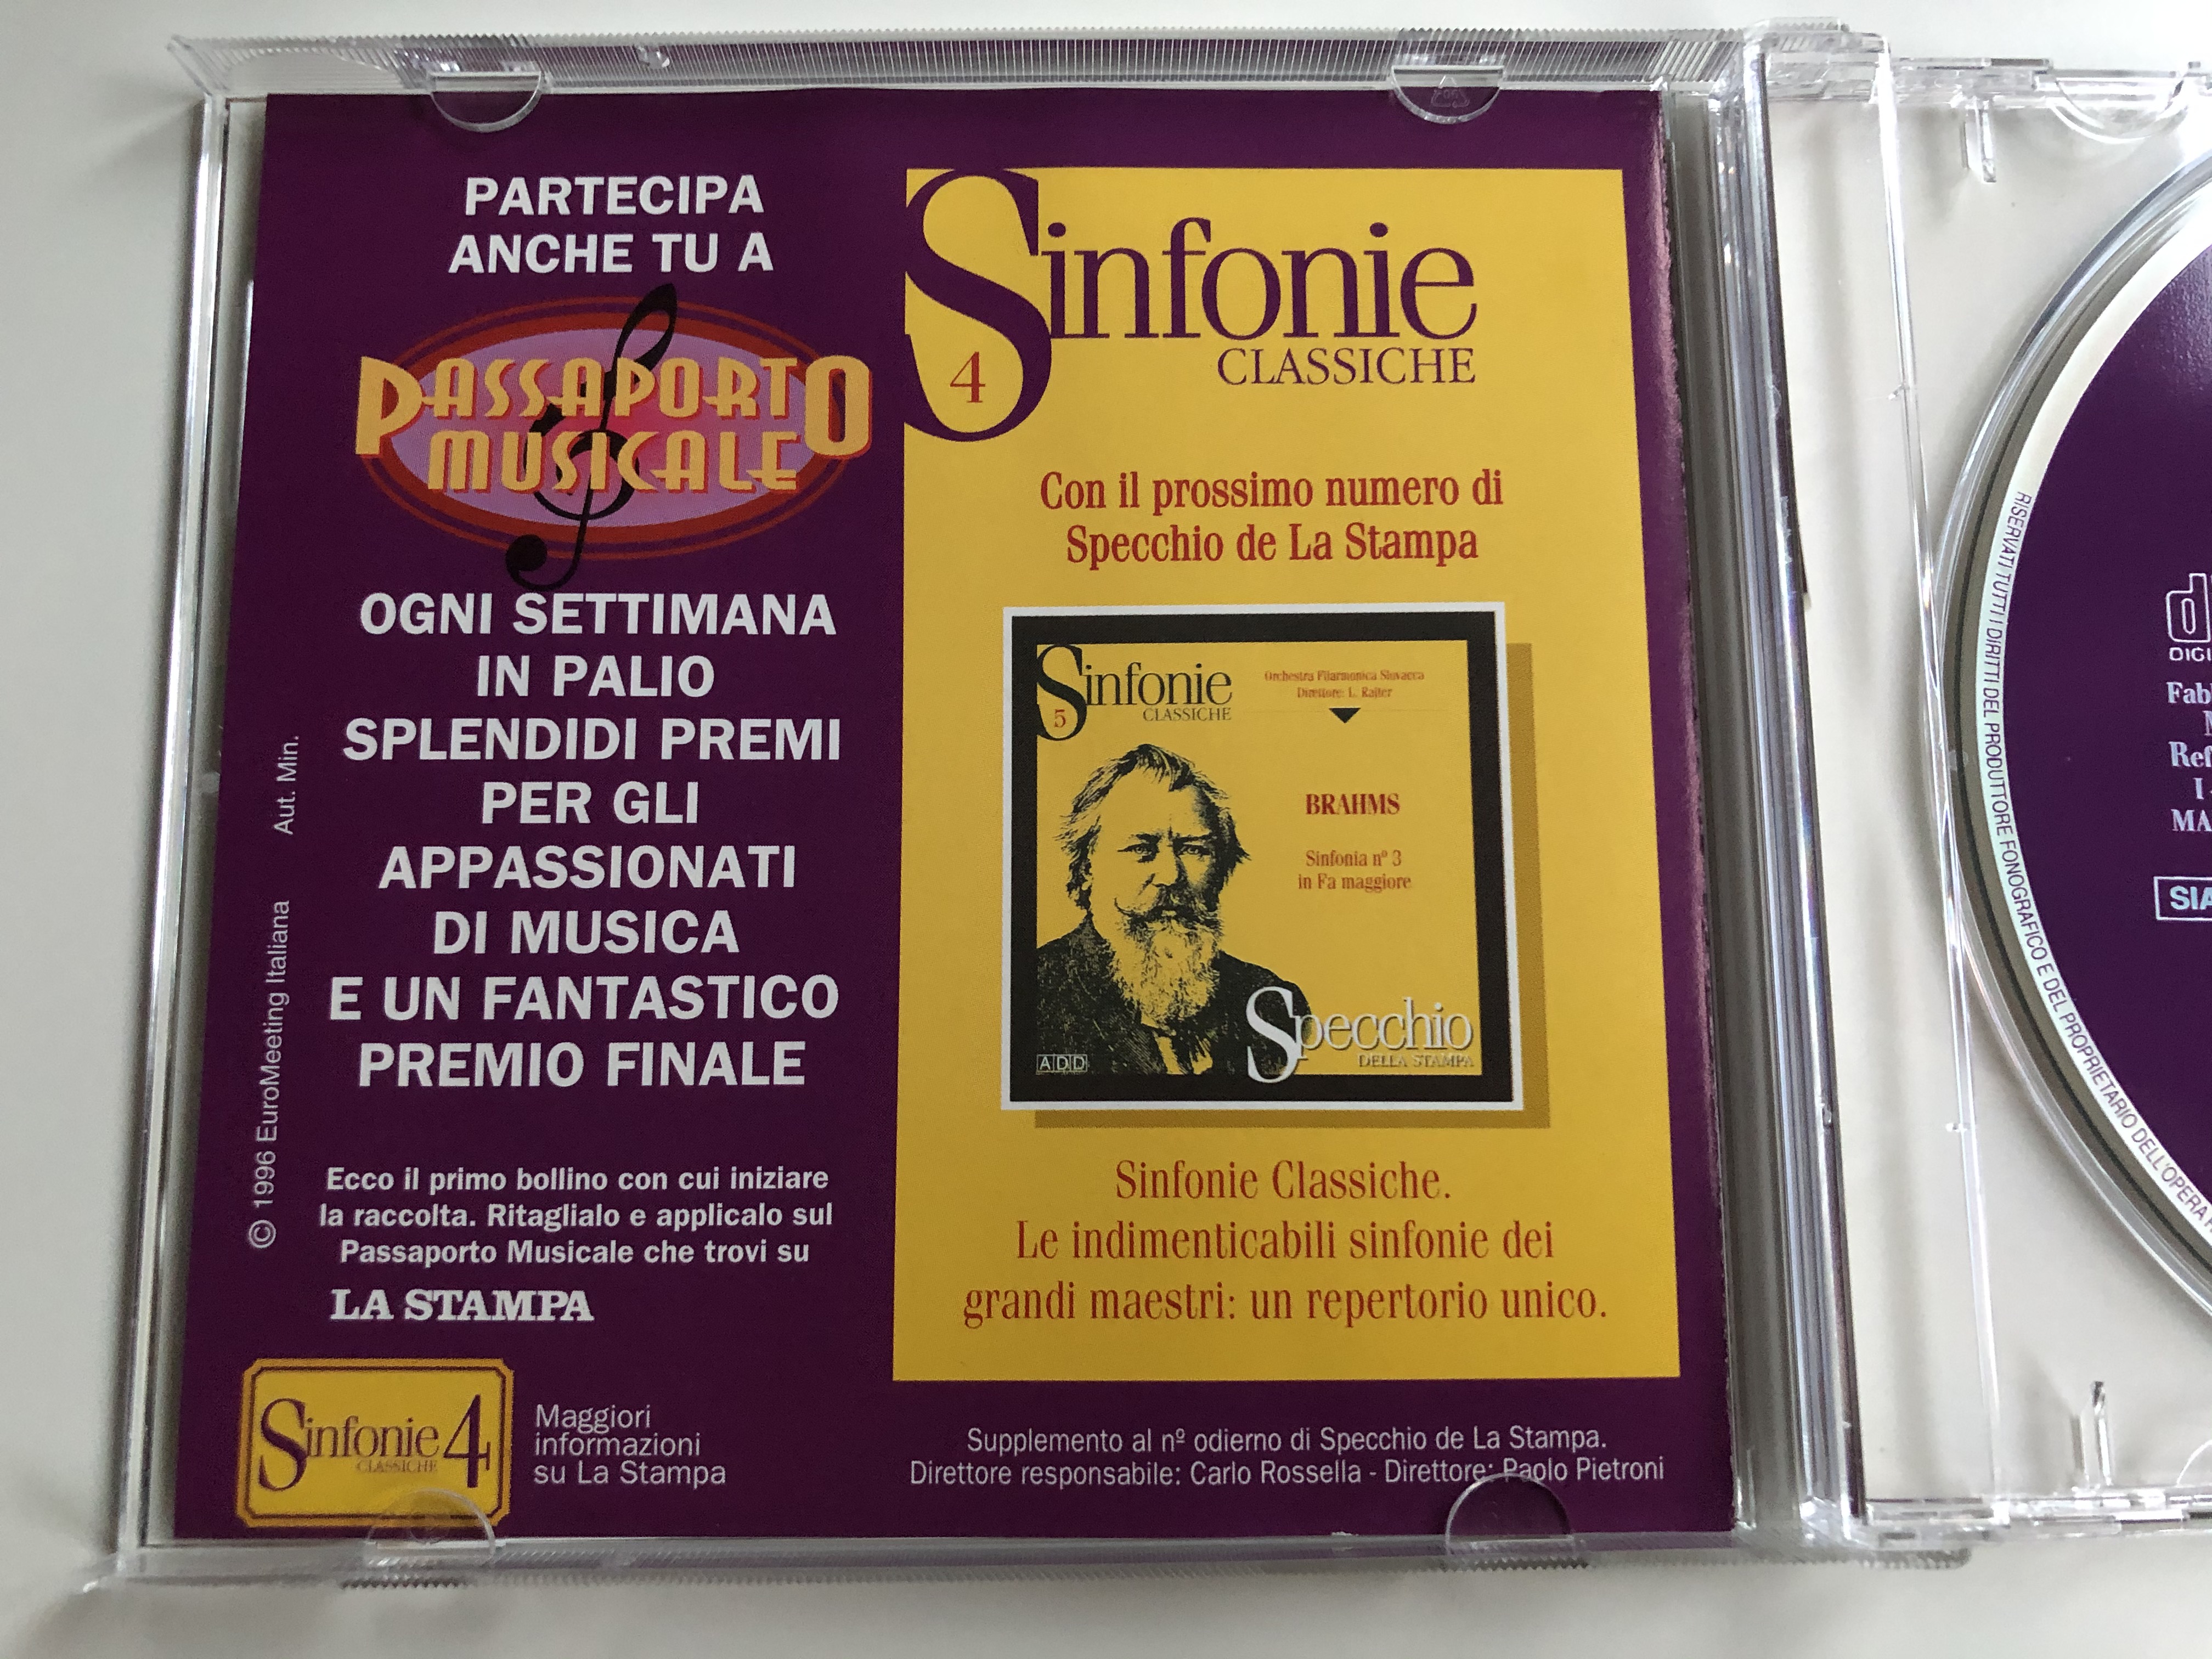 sinfonie-classiche-4-berlioz-sinfonia-fantastica-episodi-della-vita-di-un-artista-orchestra-filarmonica-slovacca-zdenek-kosler-specchio-della-stampa-audio-cd-1996-stereo-i-0696075-1-4-.jpg